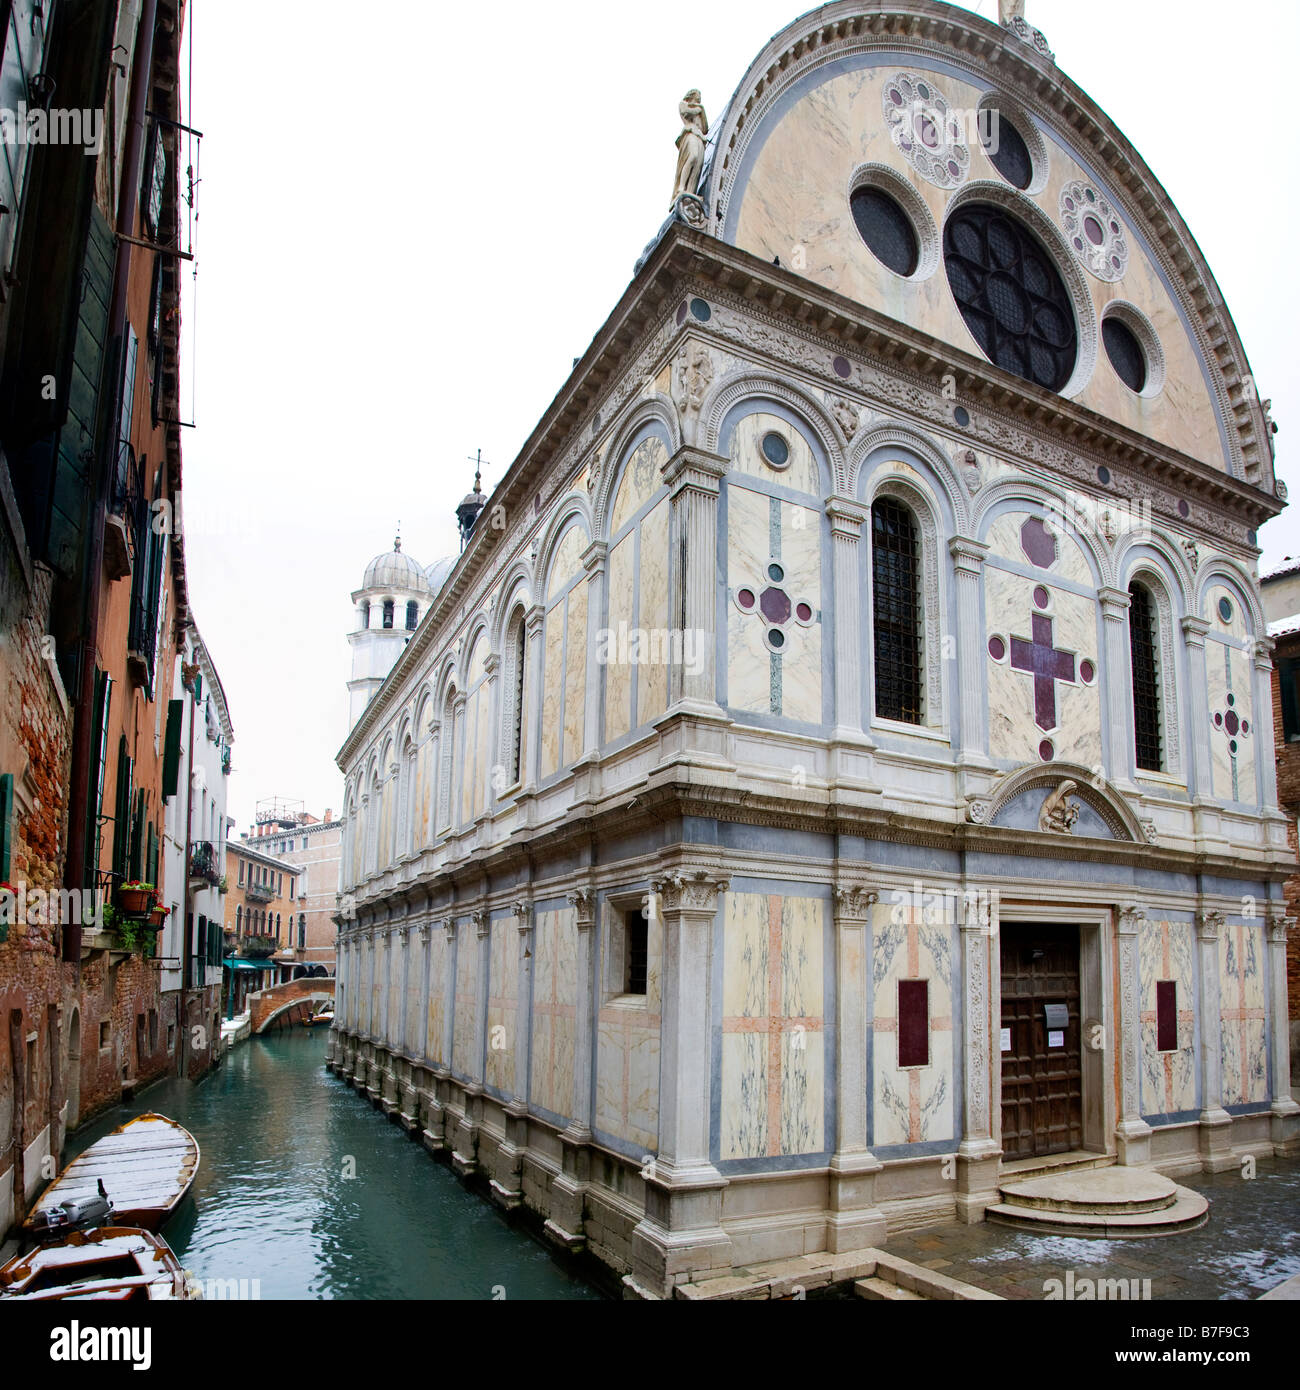 La chiesa di Santa Maria dei Miracoli a Venezia, Italia, girato poco dopo una caduta di neve Foto Stock